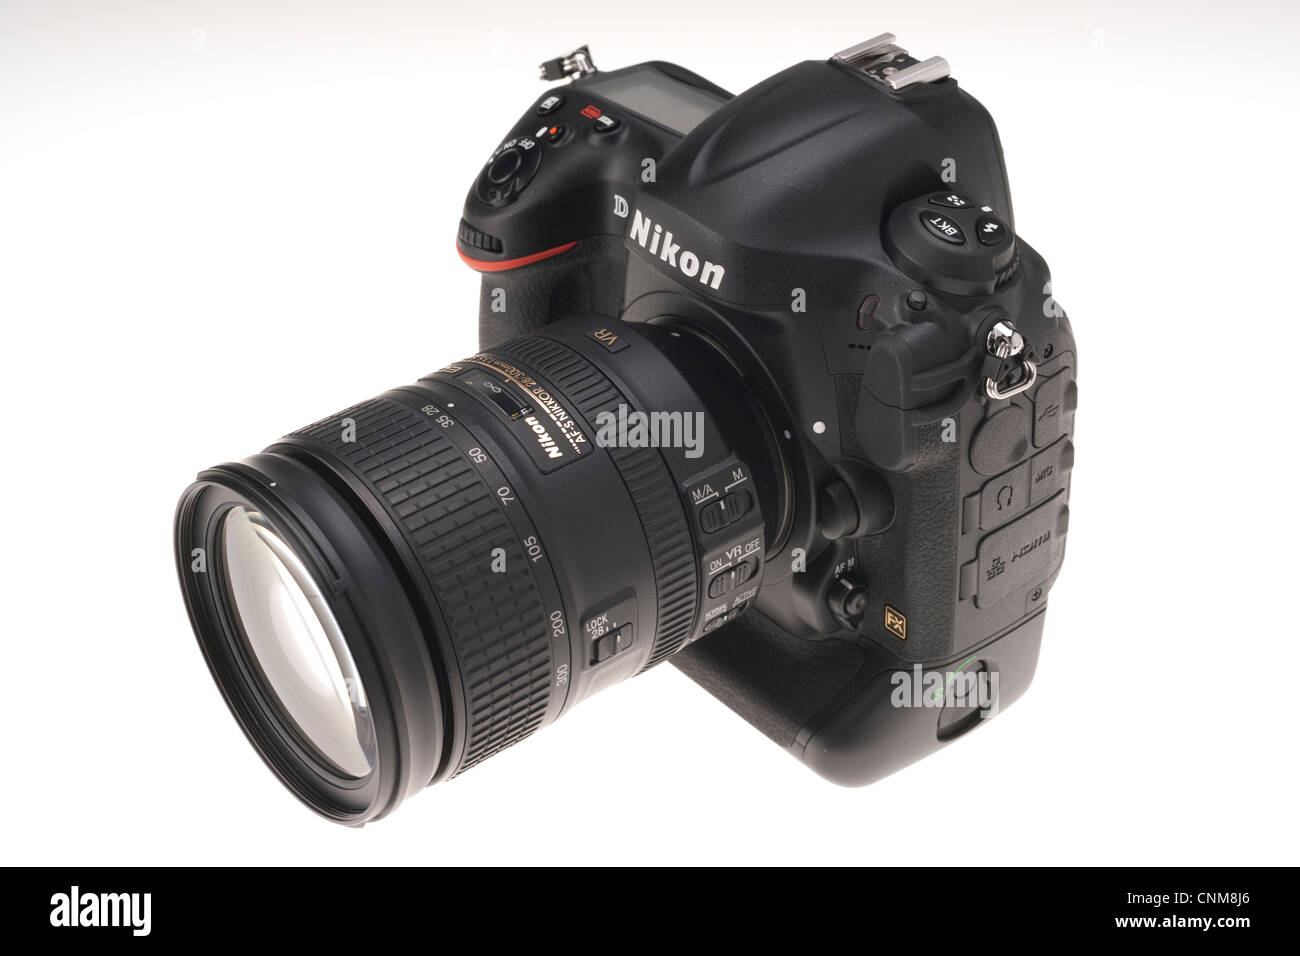 Le matériel photographique - Nikon D4 avec objectif zoom 28-300 mm. Banque D'Images